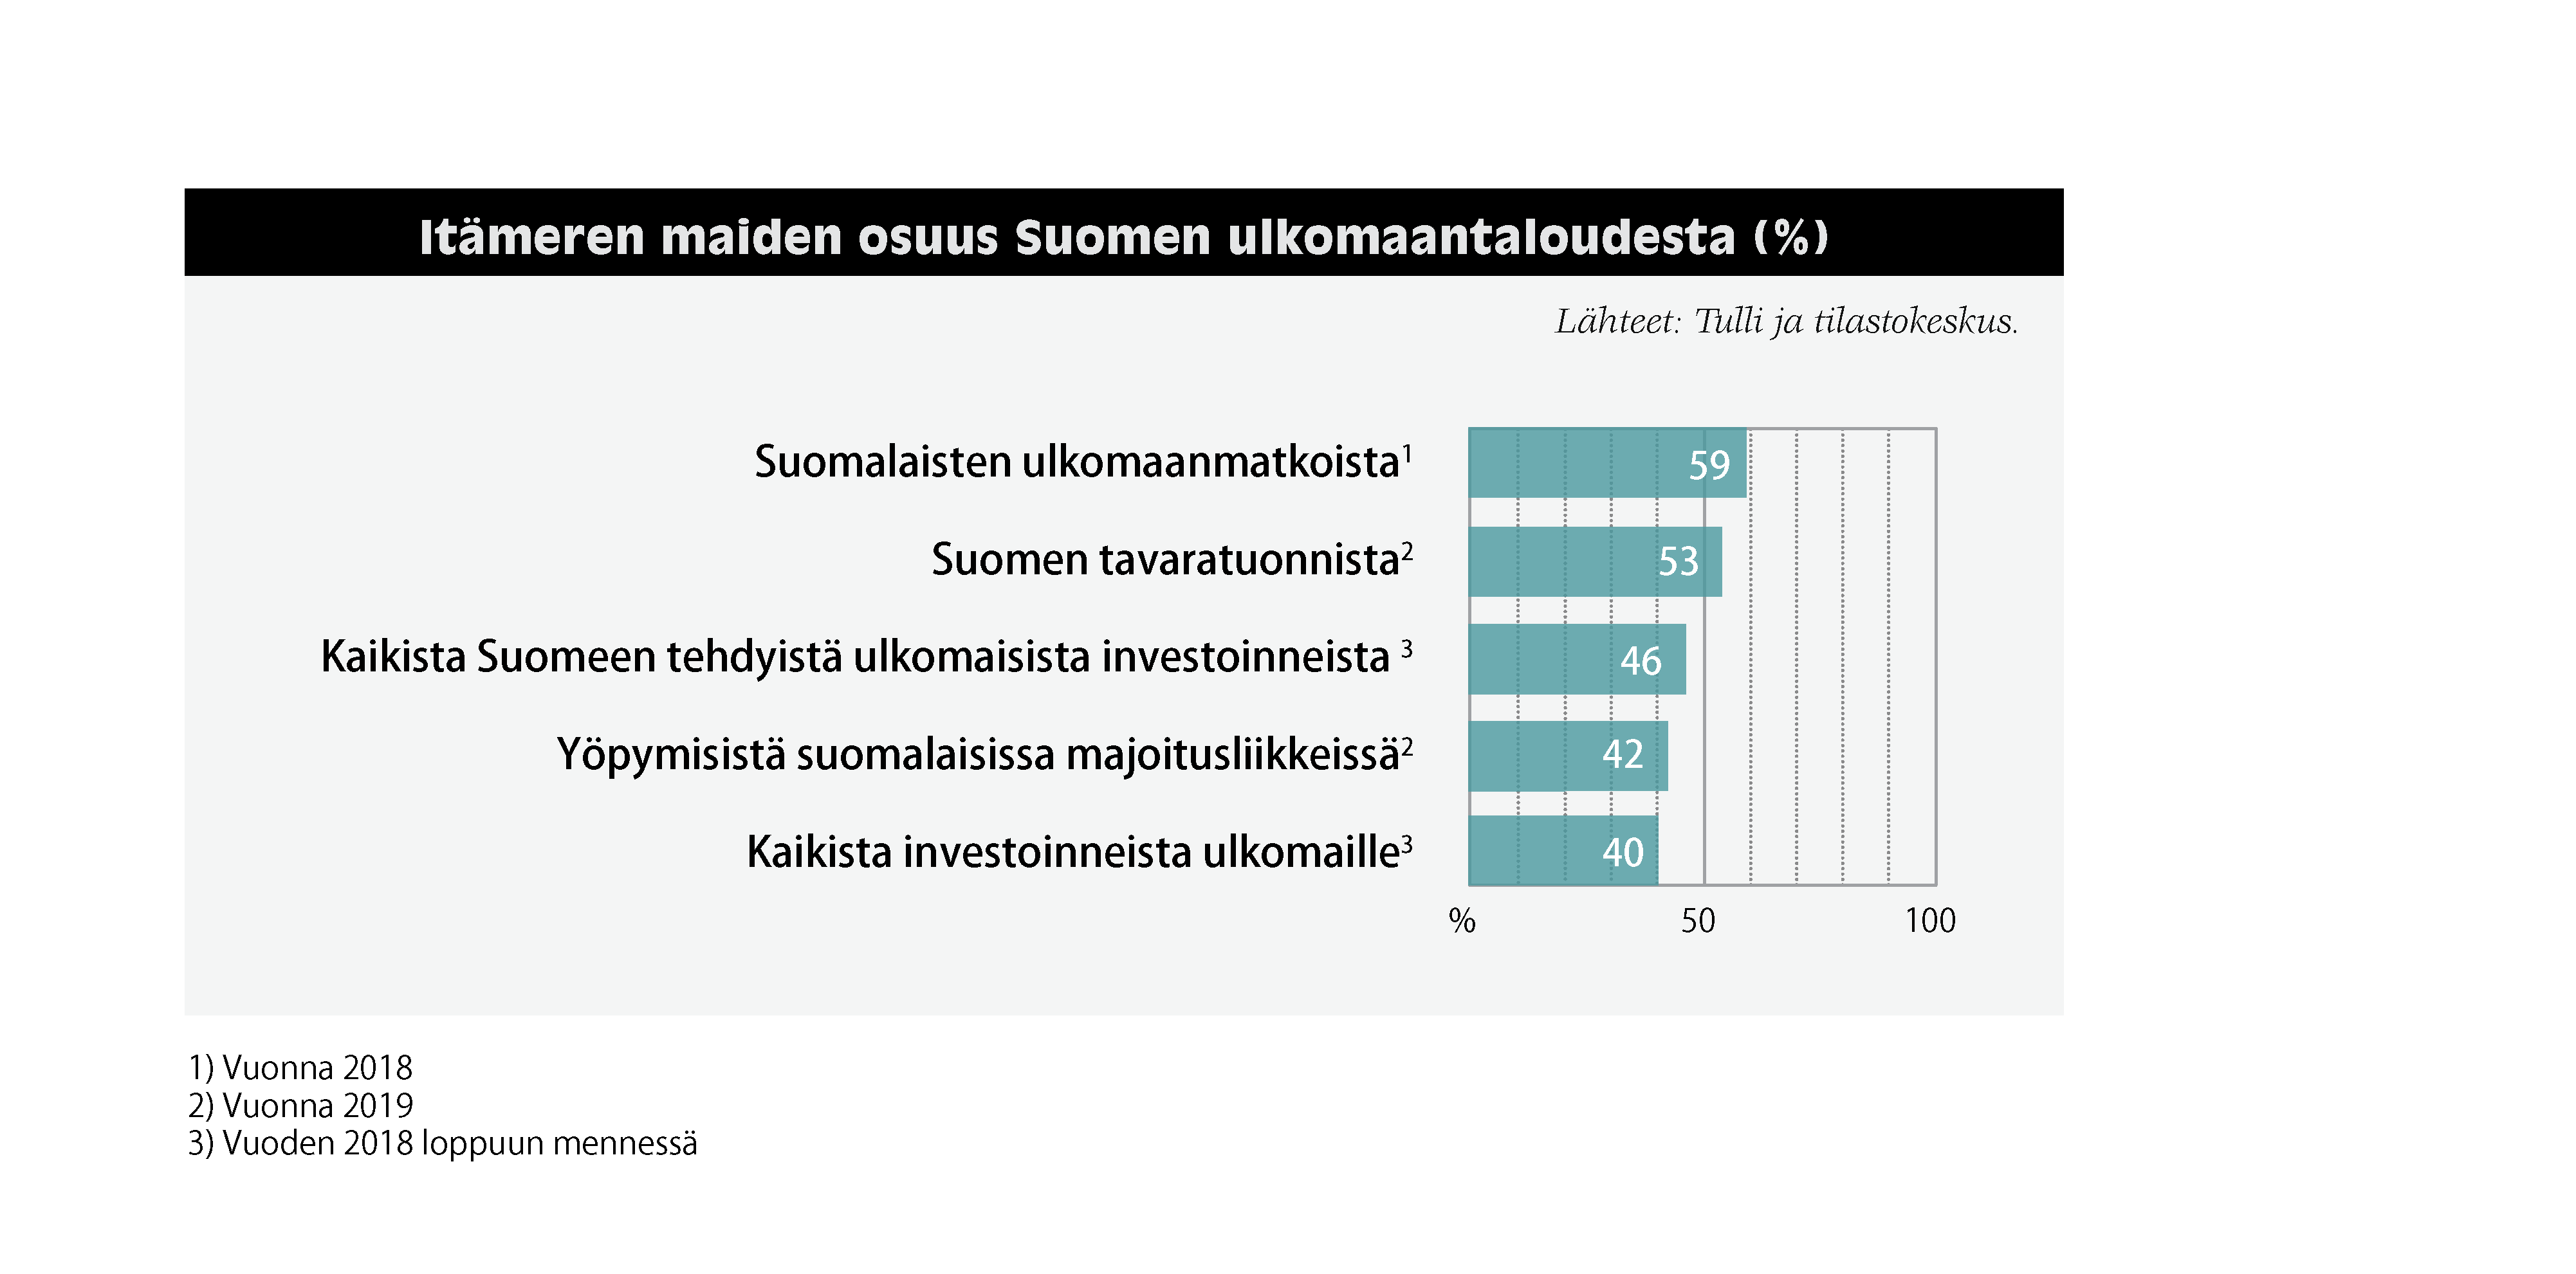 Itämeren maiden osuus Suomen ulkomaantaloudesta: Suomalaisten ulkomaanmatkoista (vuonna 2018) 59 %. Suomen tavaratuonnista (vuonna 2019) 53 %. Kaikista Suomeen tehdyistä ulkomaisista investoinneista (vuoden 2018 loppuun mennessä) 46 %. Yöpymisistä suomalaisissa majoitusliikkeissä (vuonna 2019) 42 %. Kaikista investoinneista ulkomaille (vuoden 2018 loppuun mennessä) 40 %. Lähteet: Tulli ja tilastokeskus.